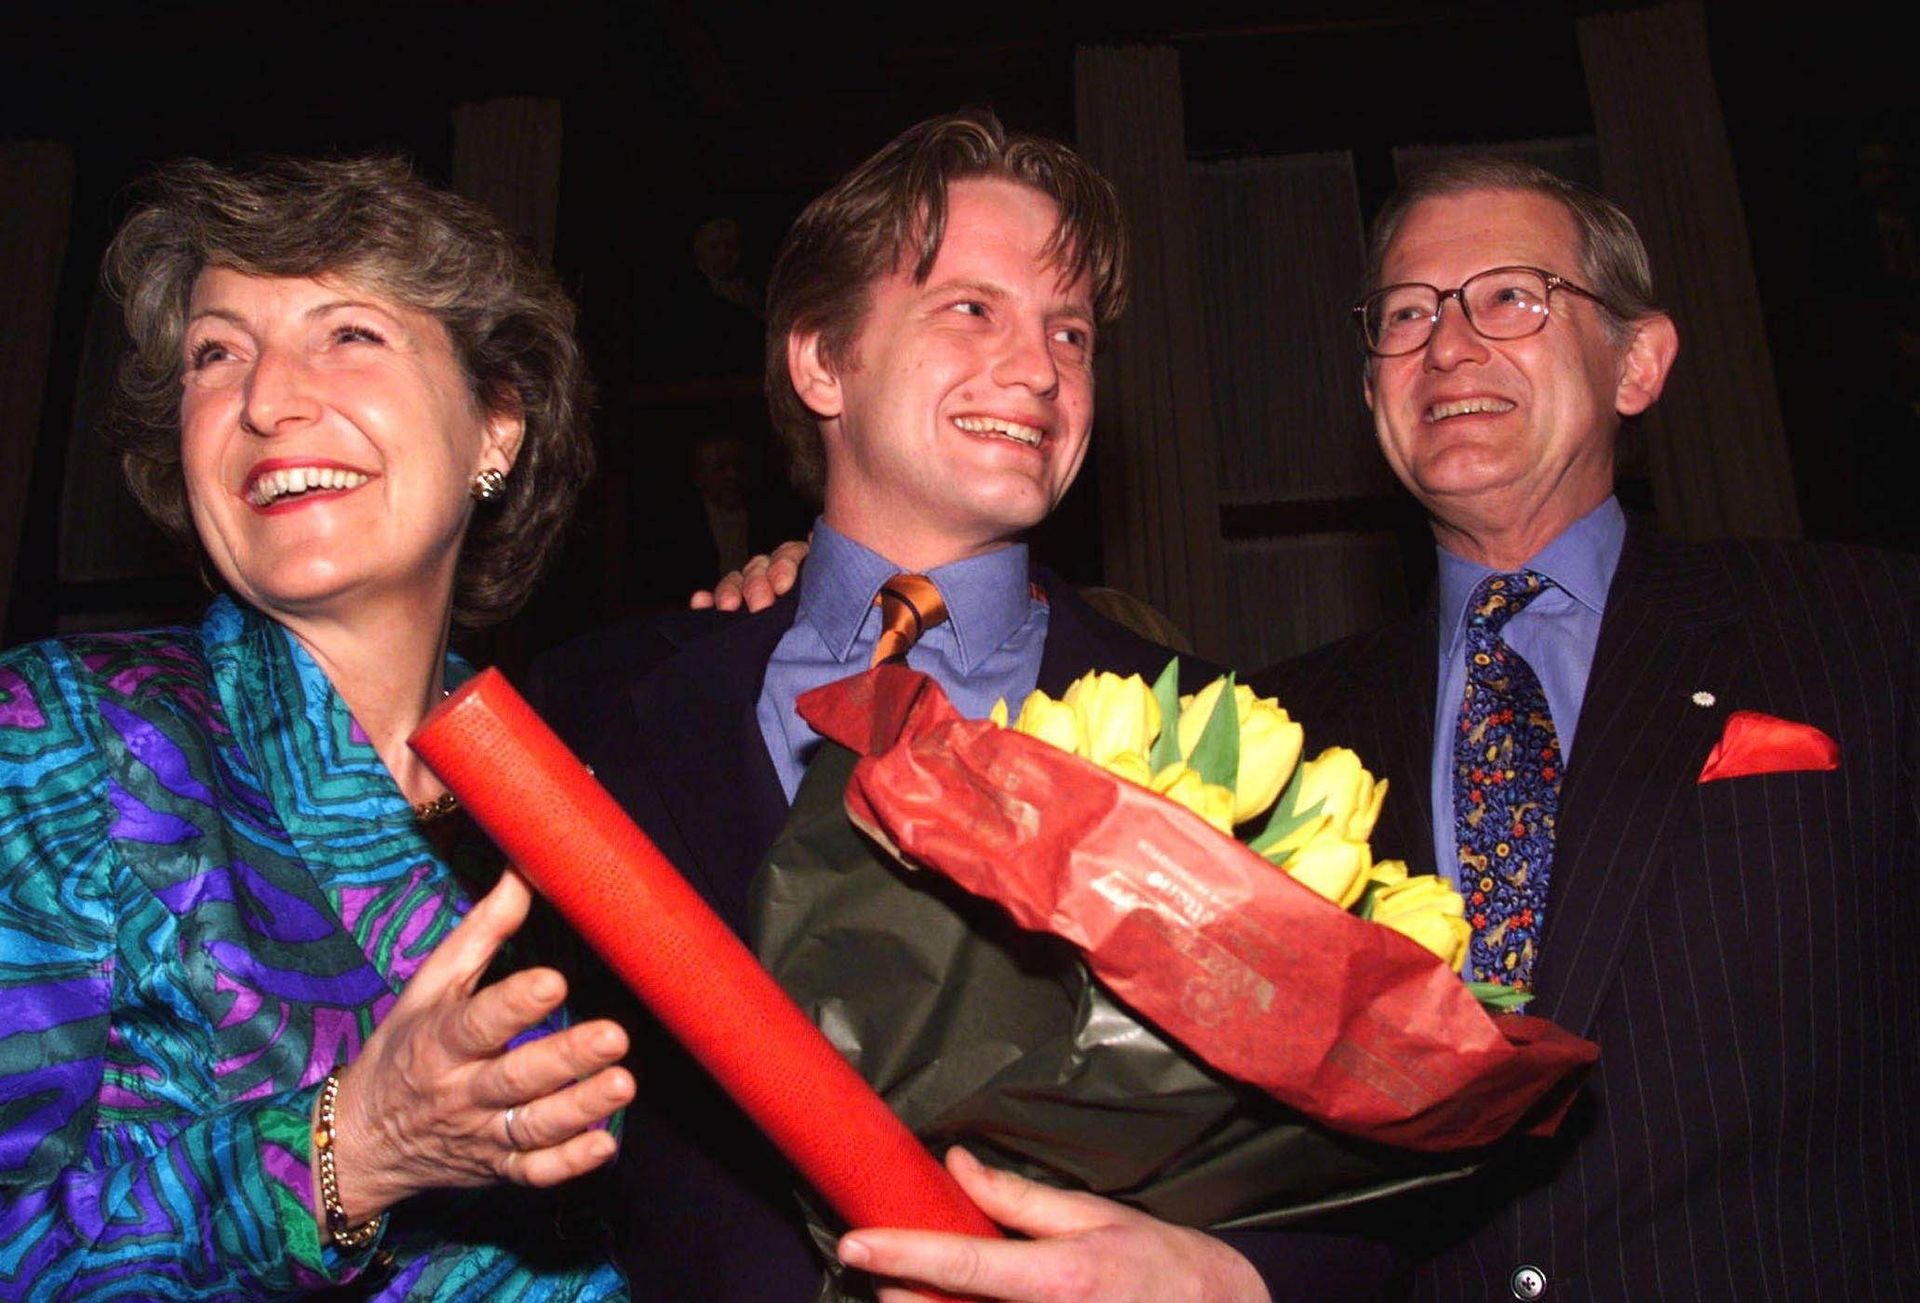 Maart 1999: Prins Pieter-Christiaan poseert trots met zijn ouders, prinses Margriet en mr. Pieter van Vollenhoven, nadat hij afstudeert aan de faculteit der rechtsgeleerdheid van de Universiteit van Utrecht.